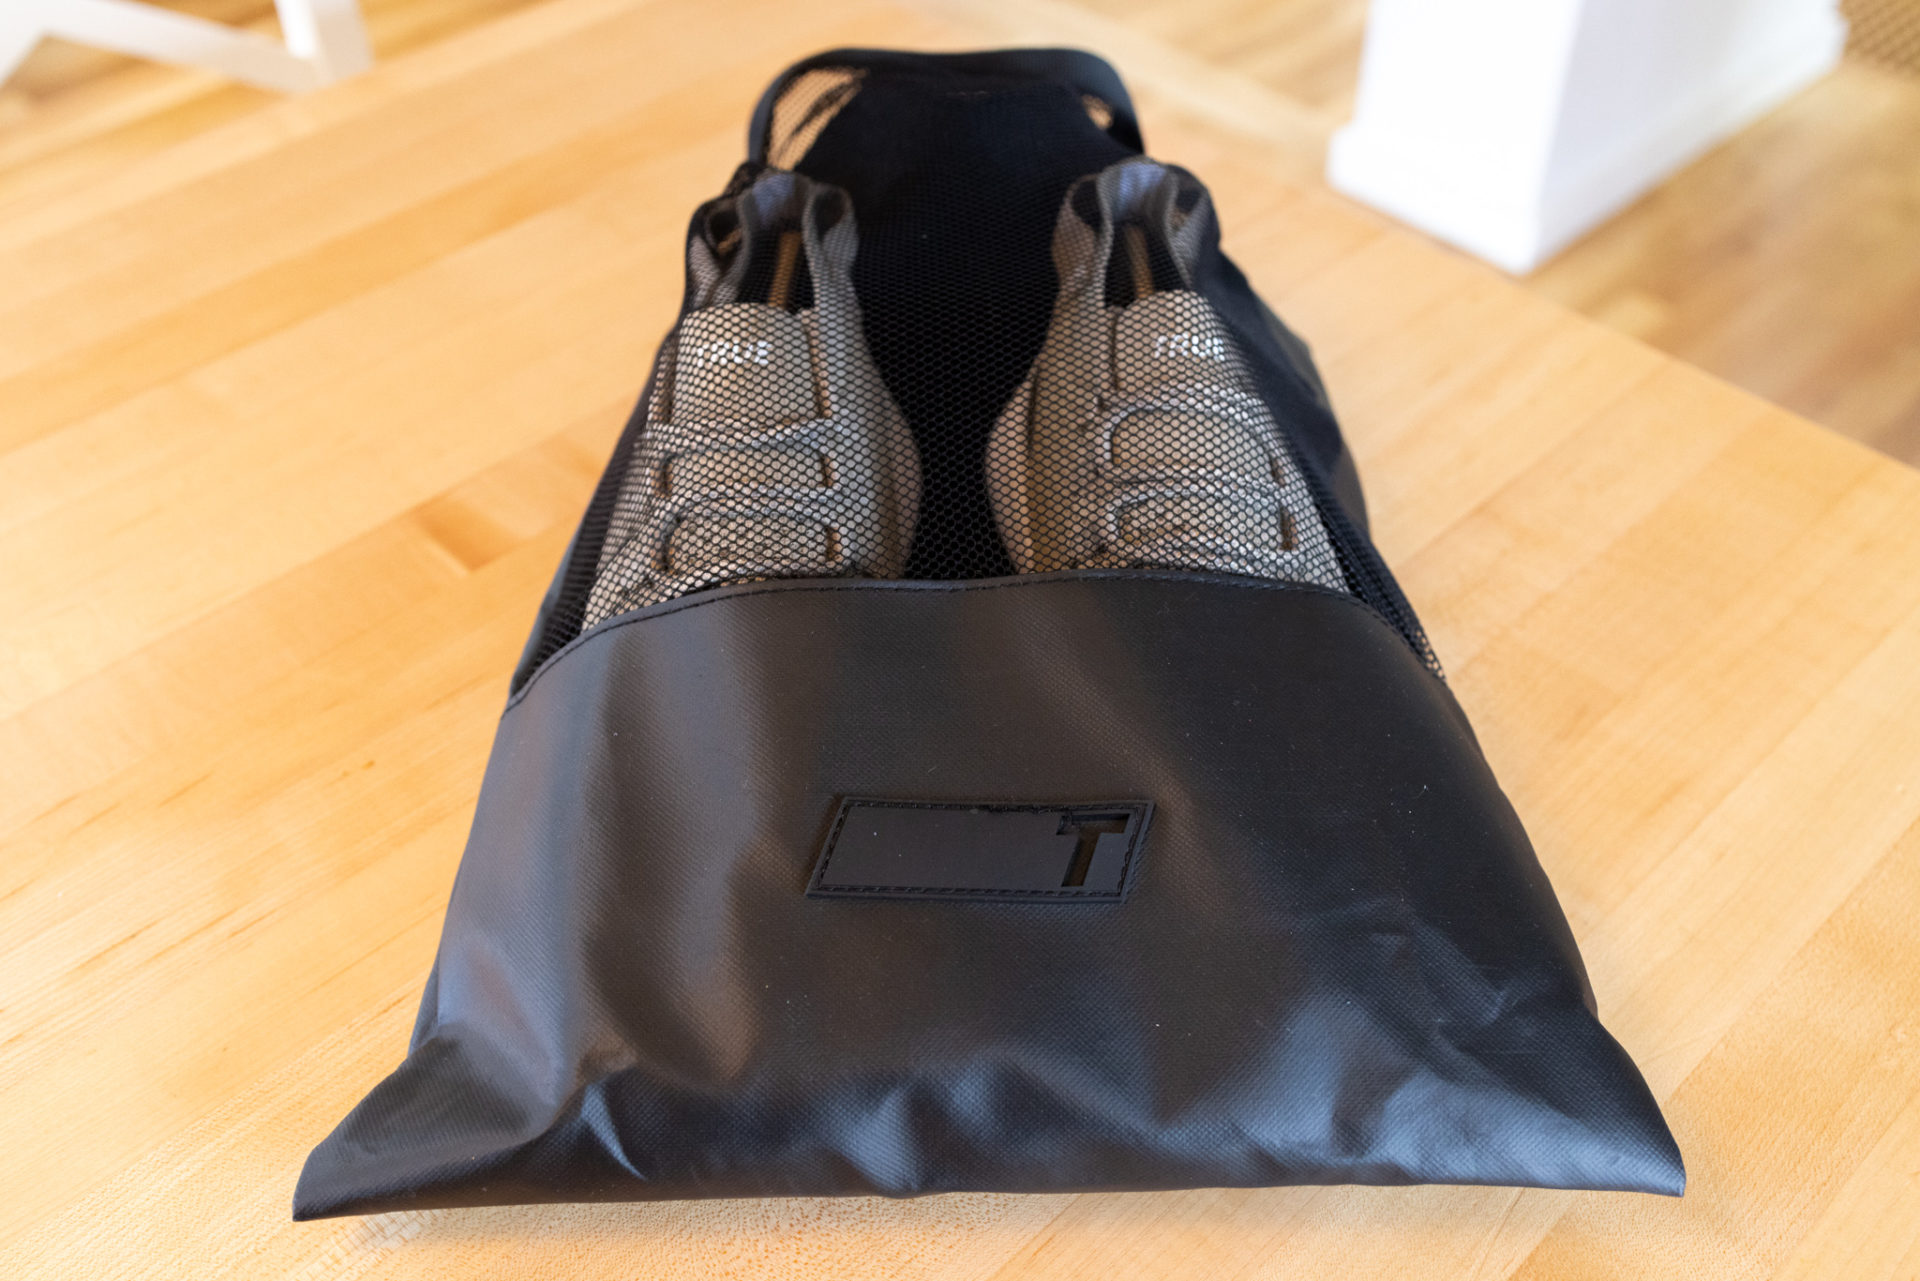 True Linkswear Lux Sport golf shoe in bag